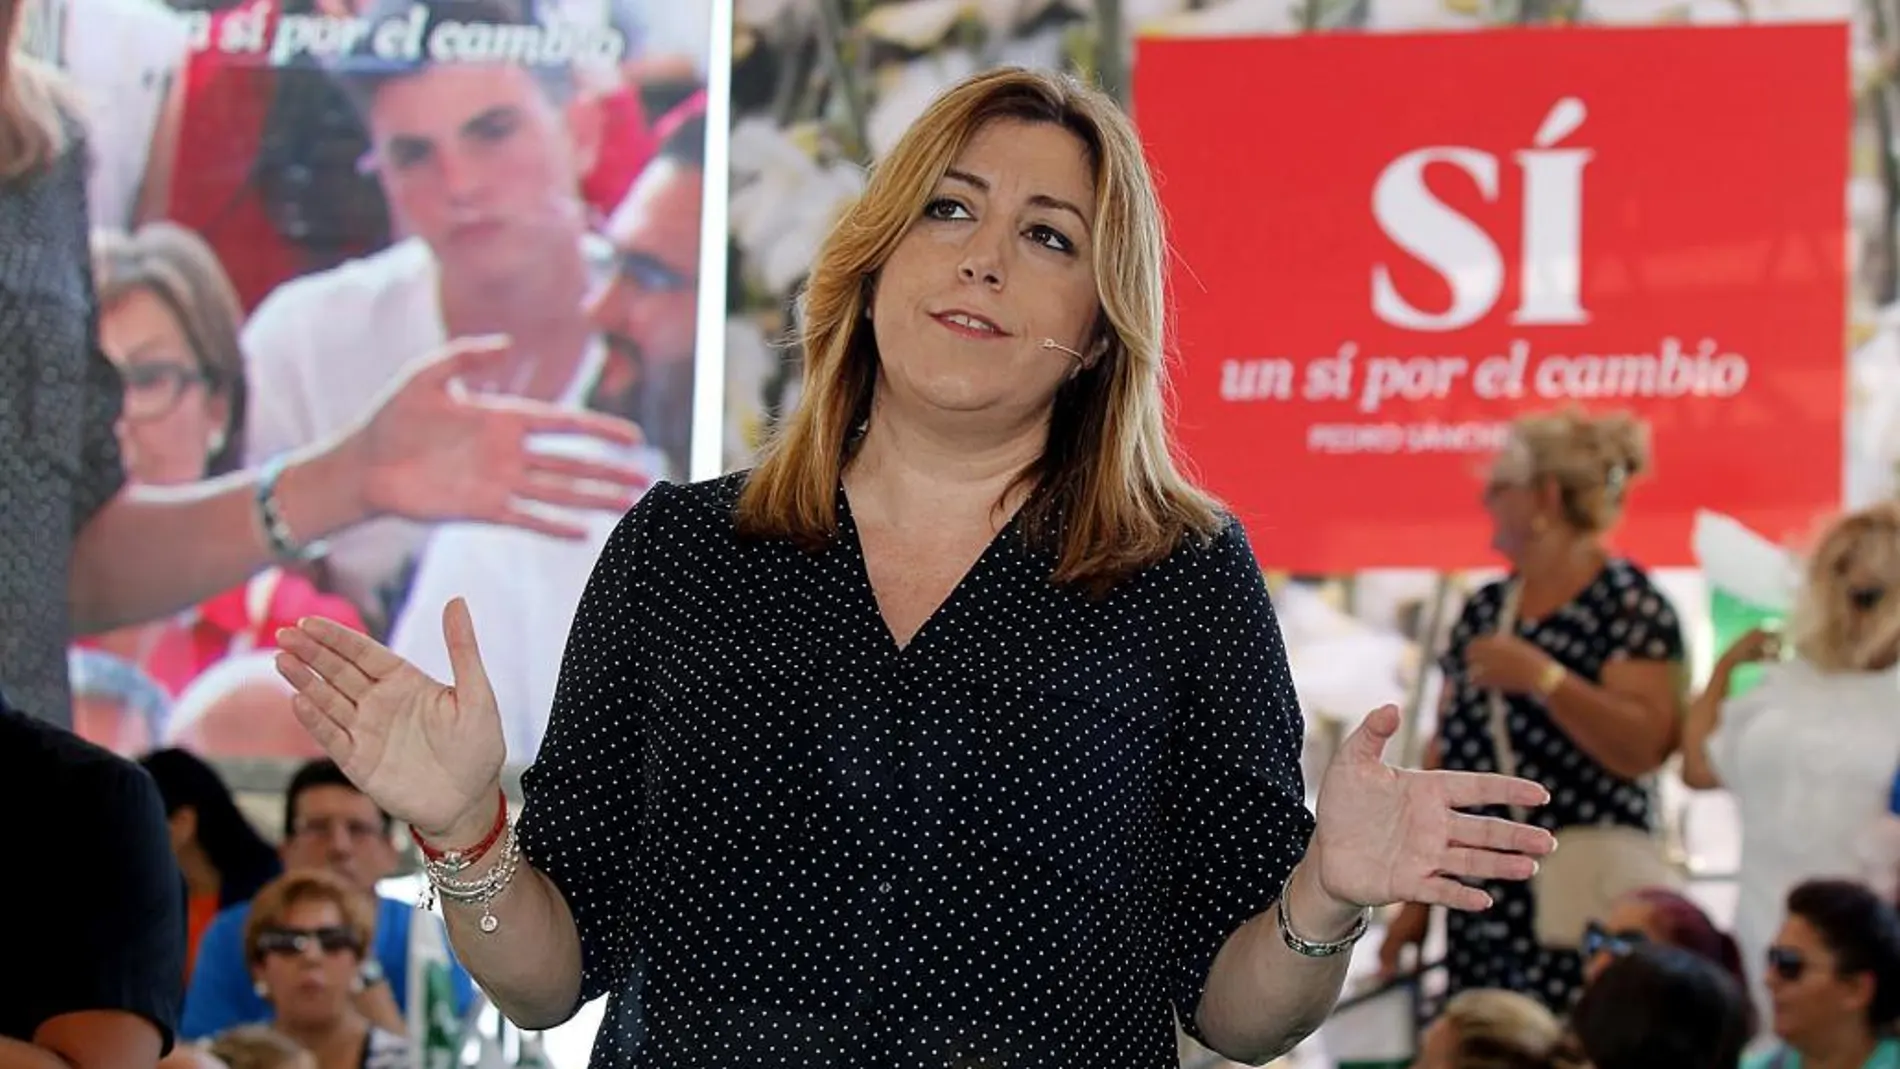 La secretaria general de PSOE andaluz, Susana Diaz, durante su intervención en un acto de precampaña en el municipio almeriense de Garrucha